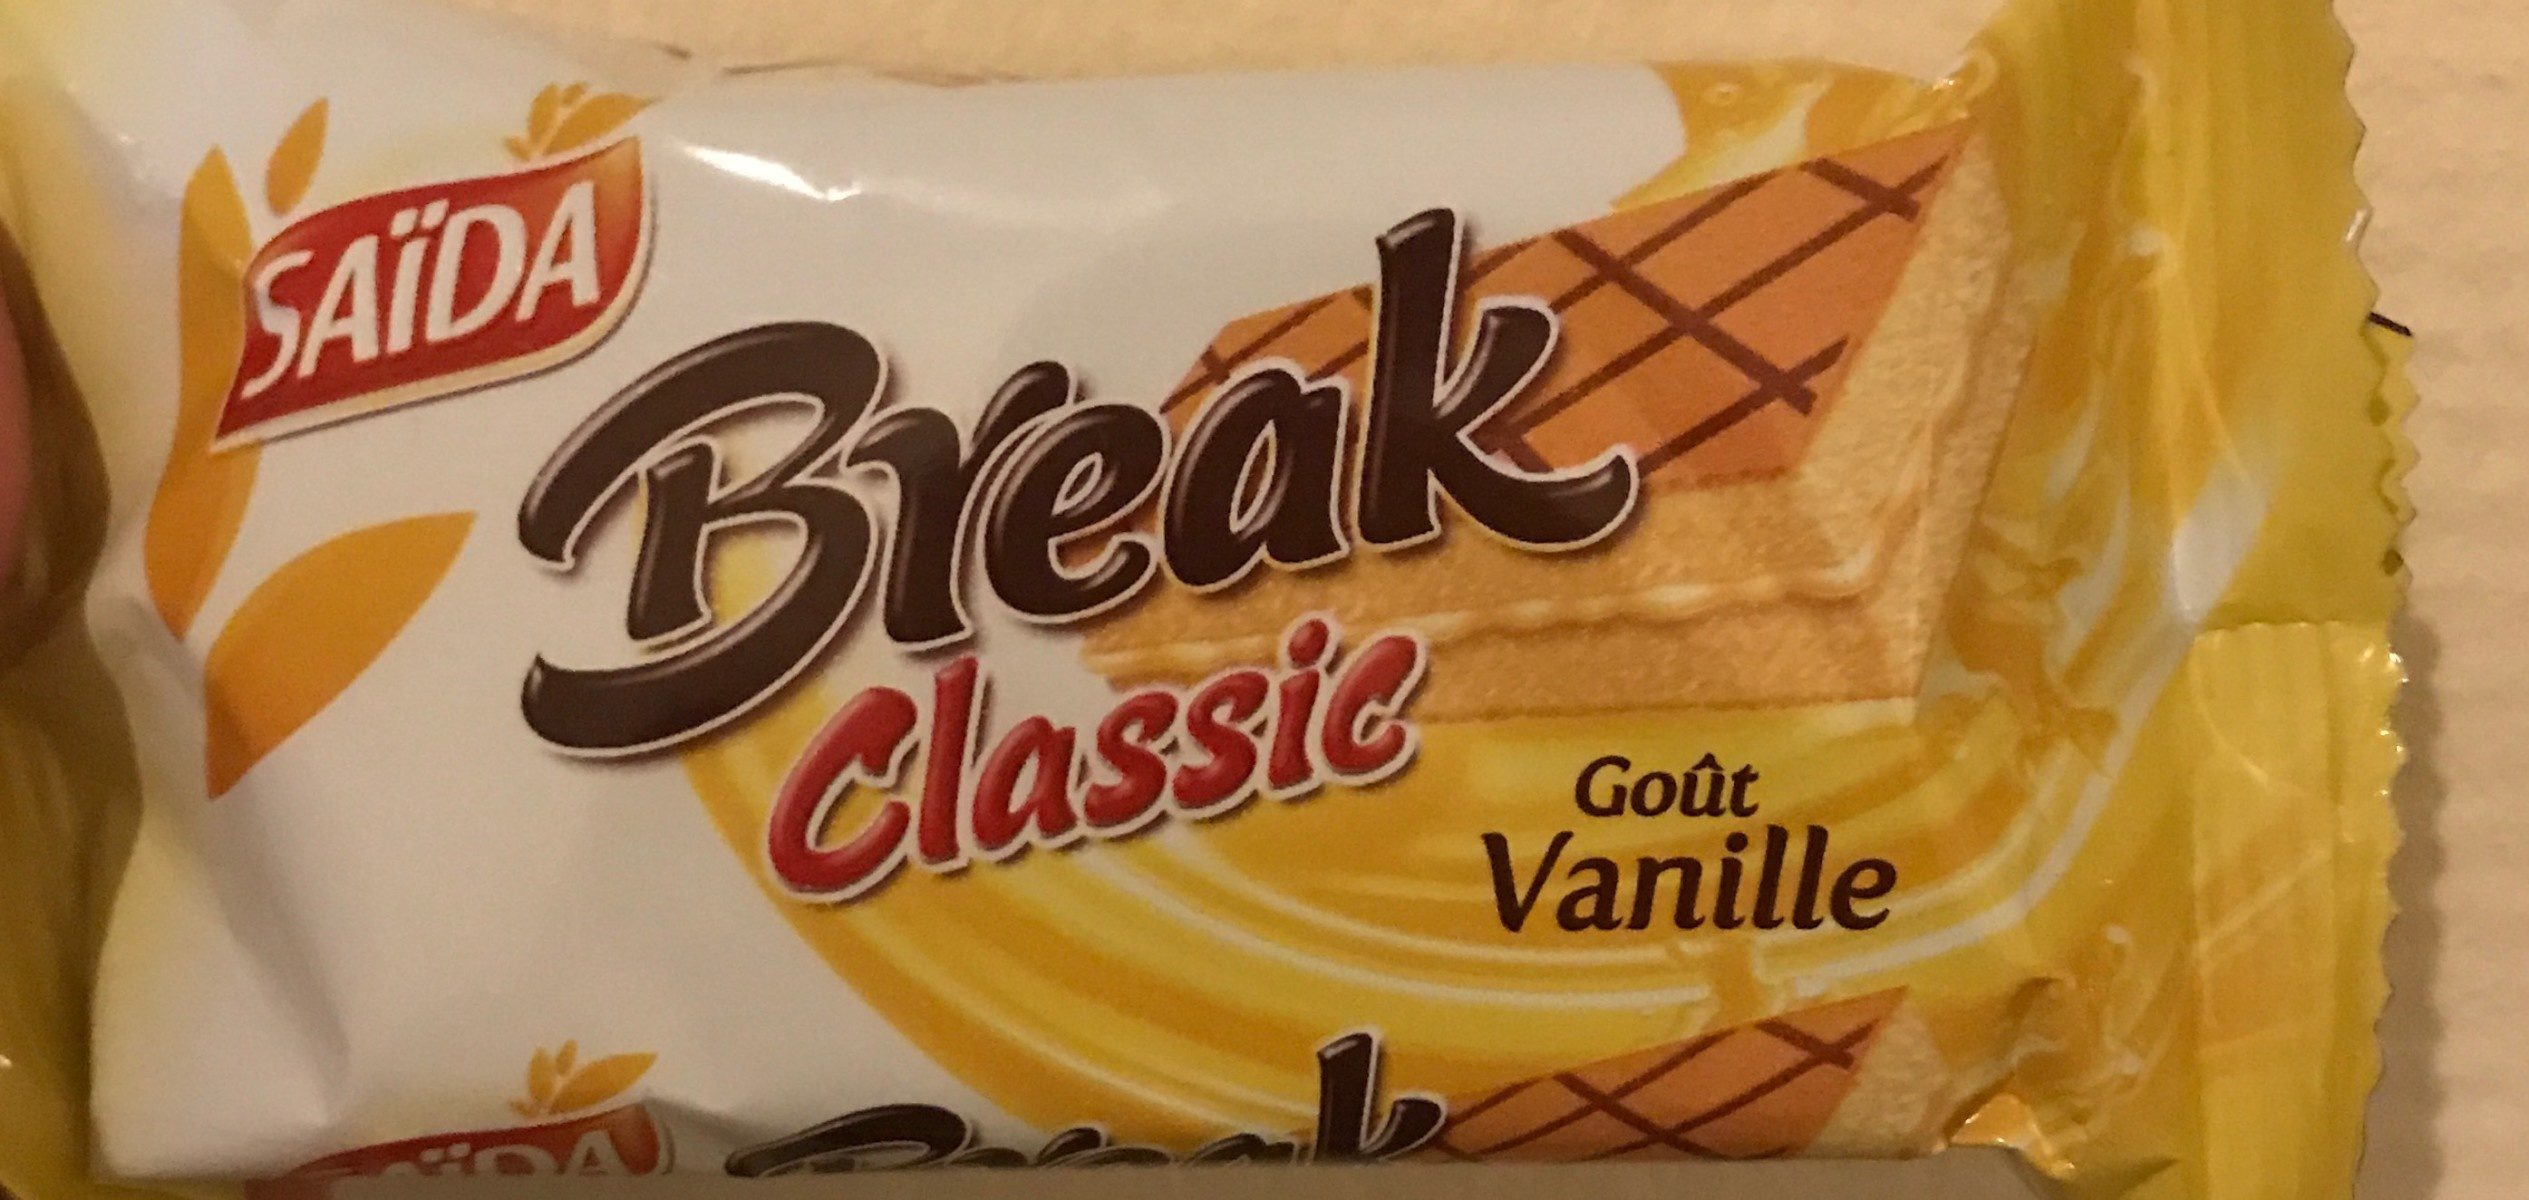 Break Classic ( Goût Vanille ) - Product - fr